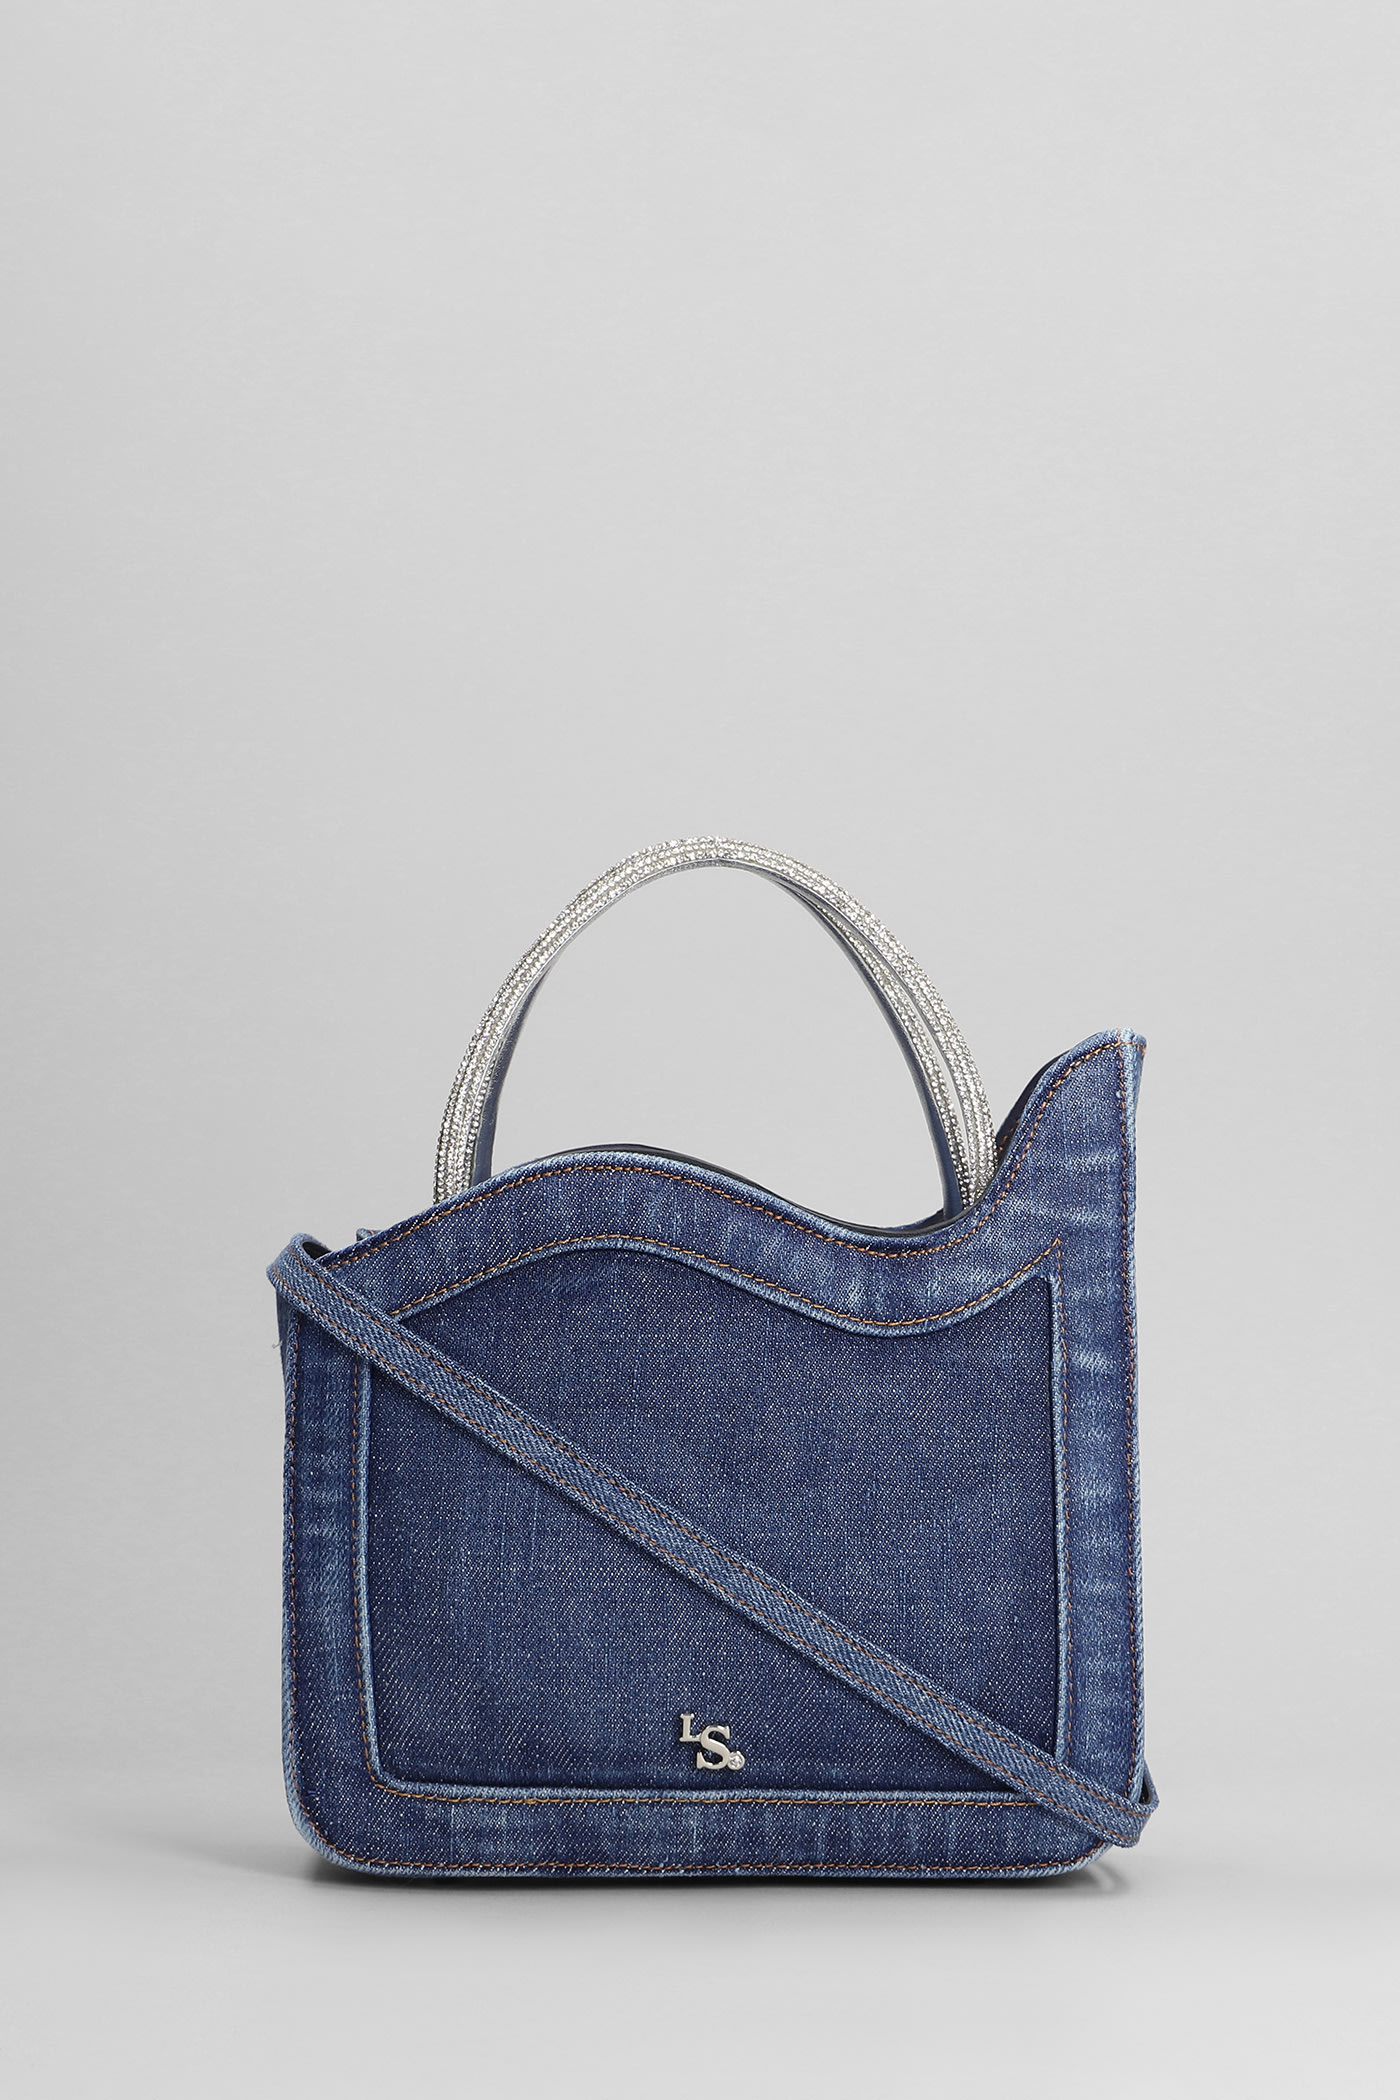 Ivy Shoulder Bag In Blue Denim